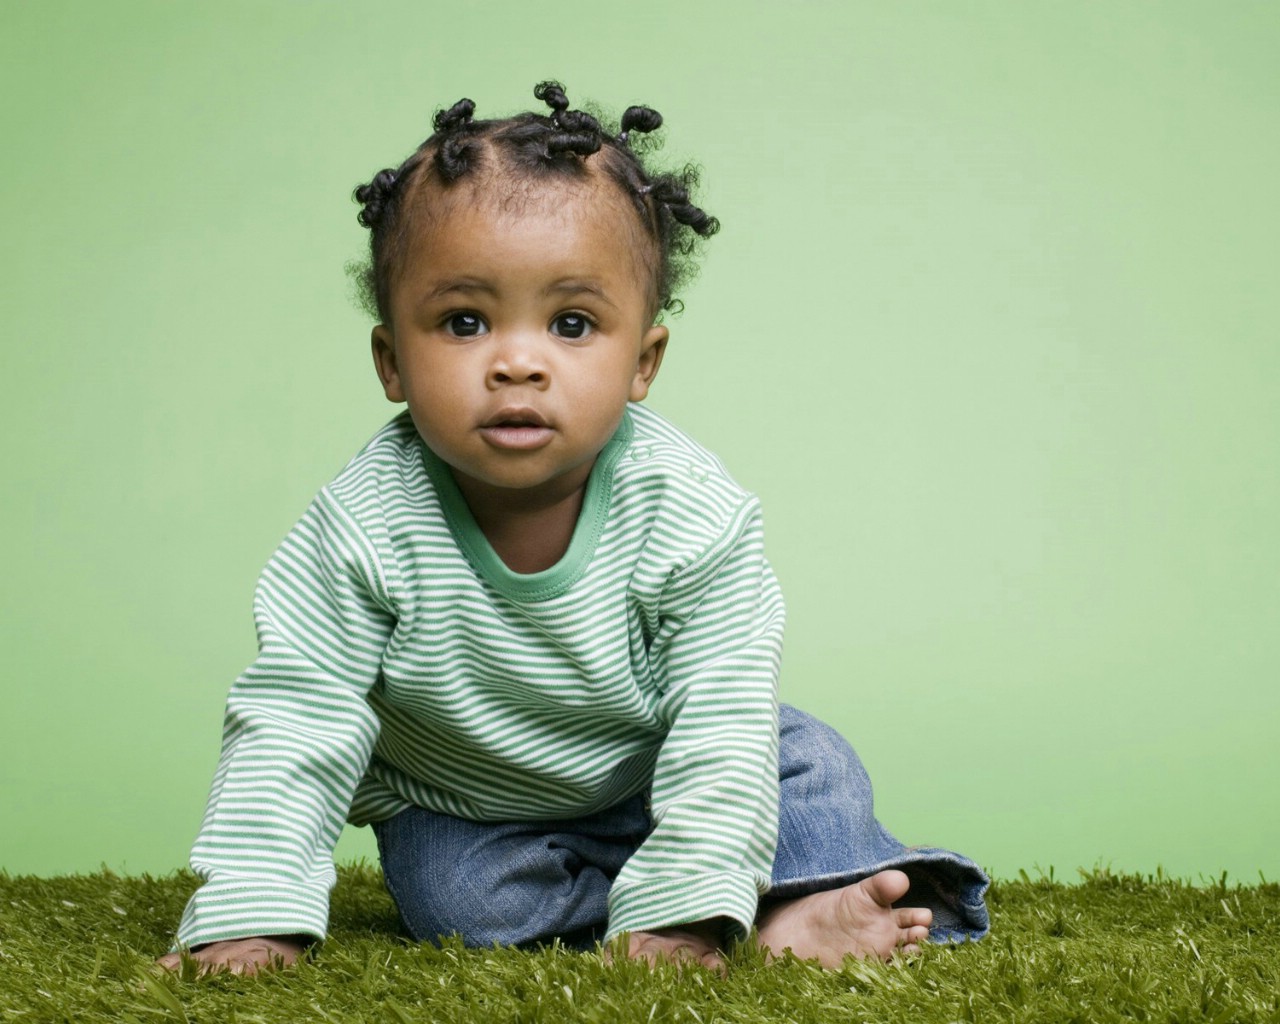 壁纸1680×1050黑人小宝宝 外国儿童摄影图片壁纸,国外儿童摄影壁纸(第二辑)壁纸图片-摄影壁纸-摄影图片素材-桌面壁纸